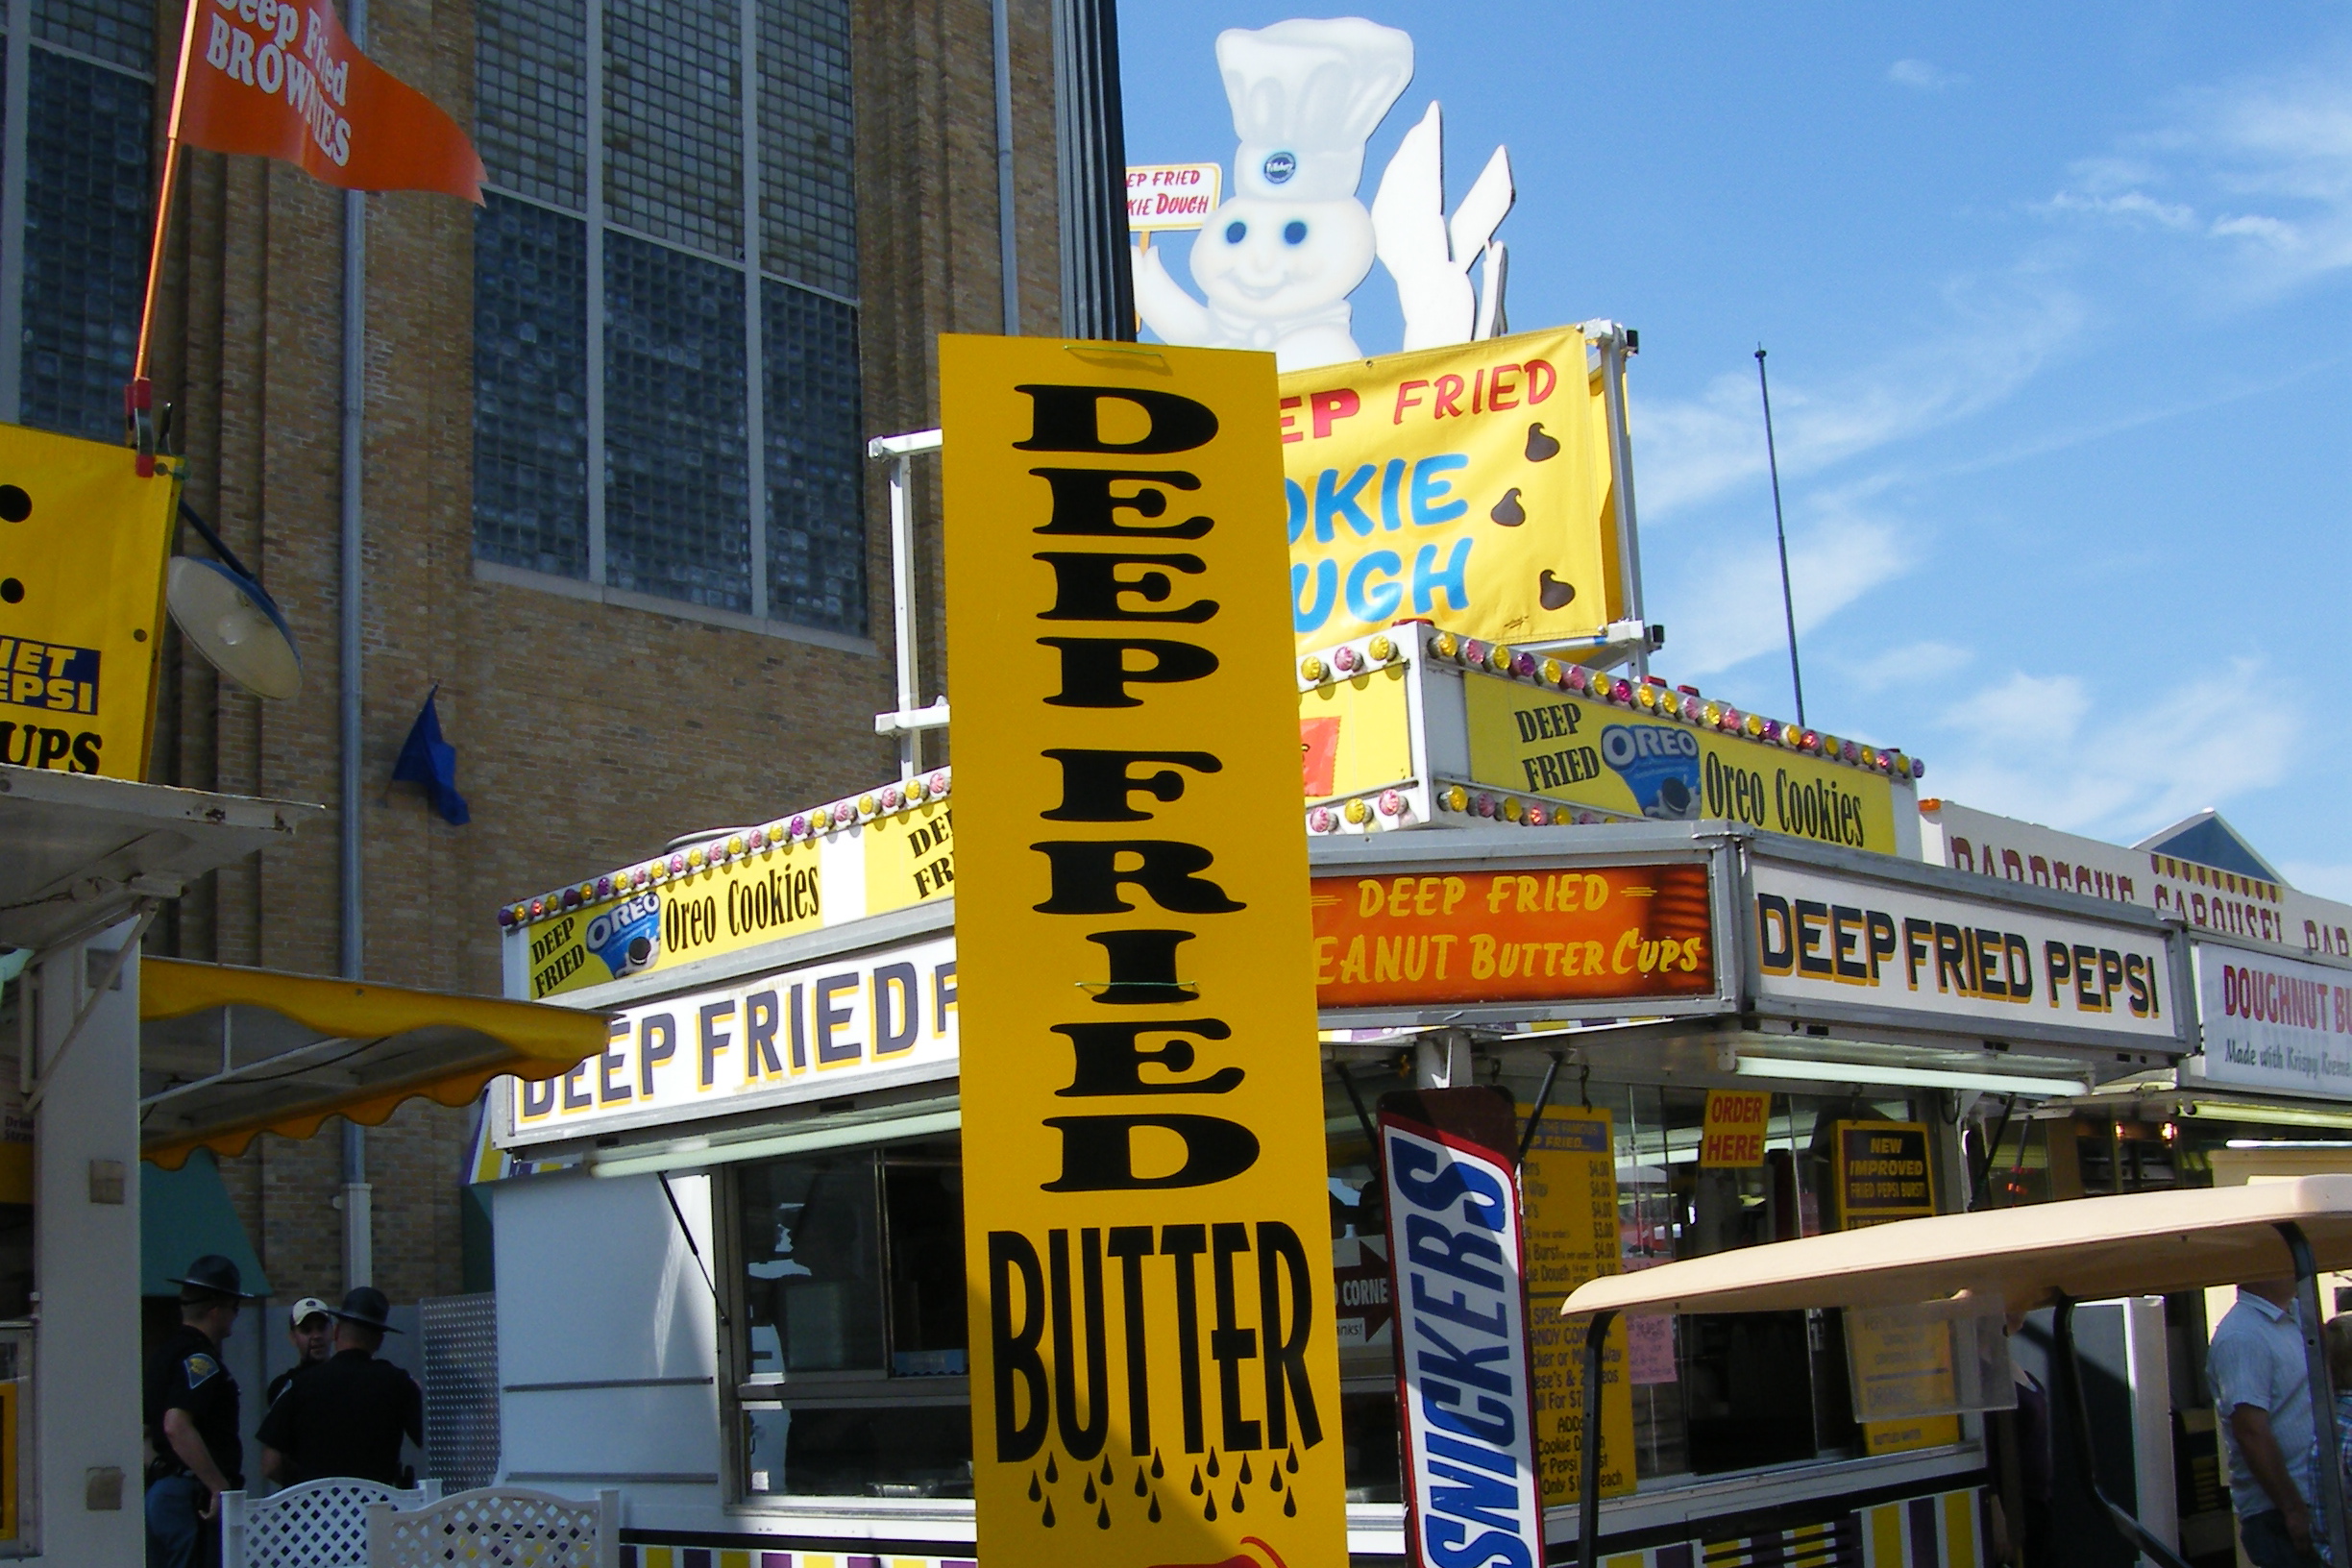 fried butter state fair